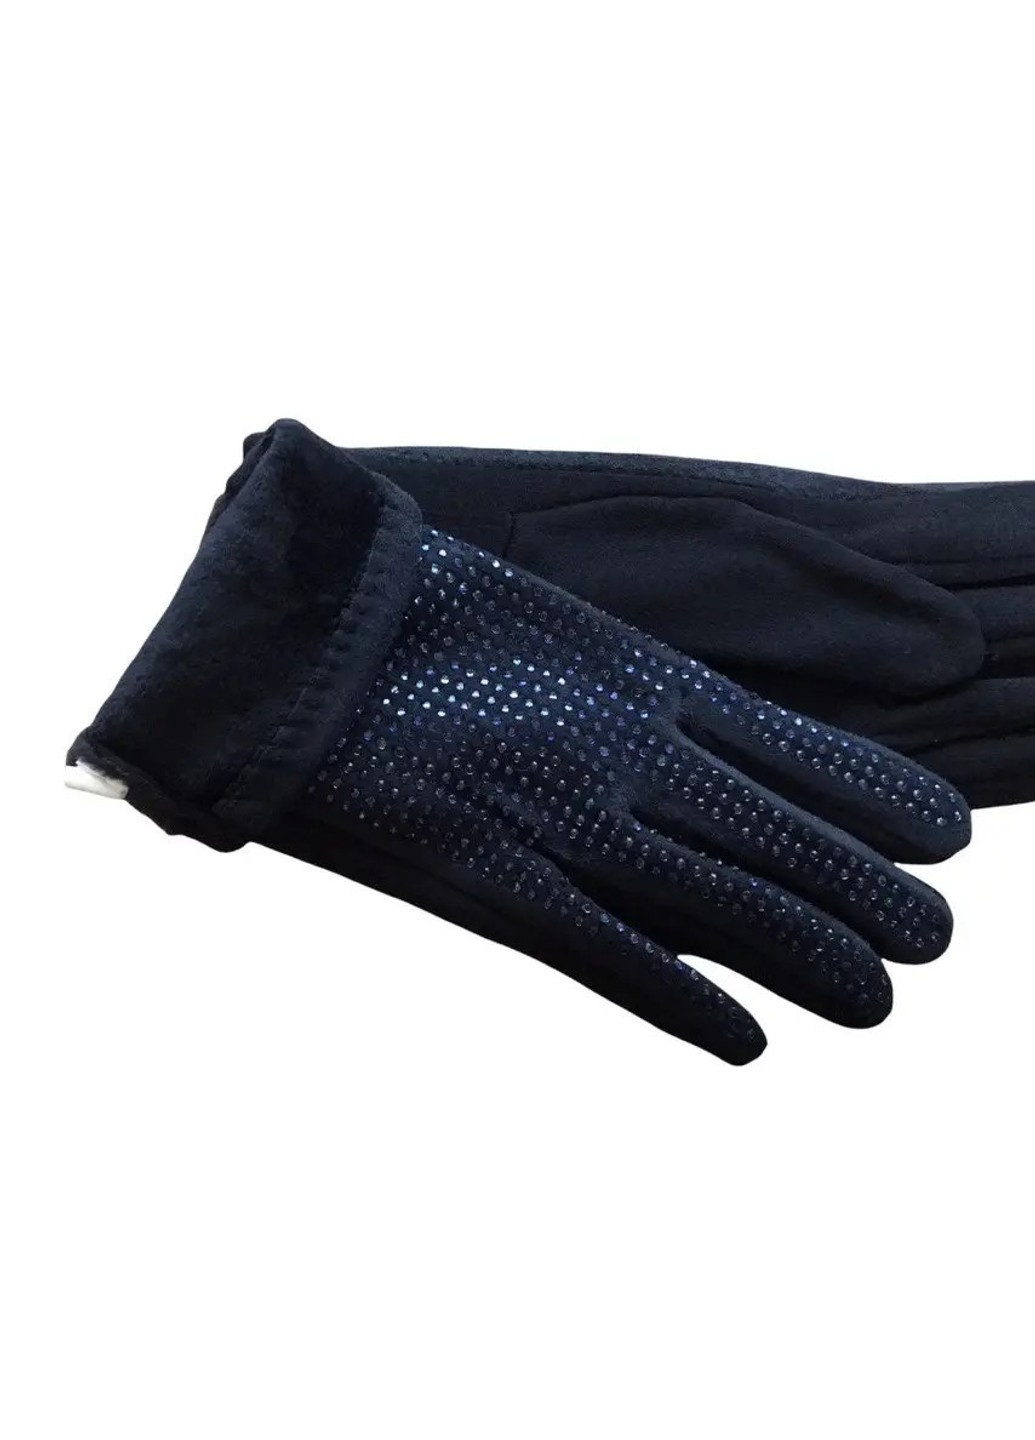 Женские стрейчевые перчатки чёрные 197s1 S BR-S (261771518)